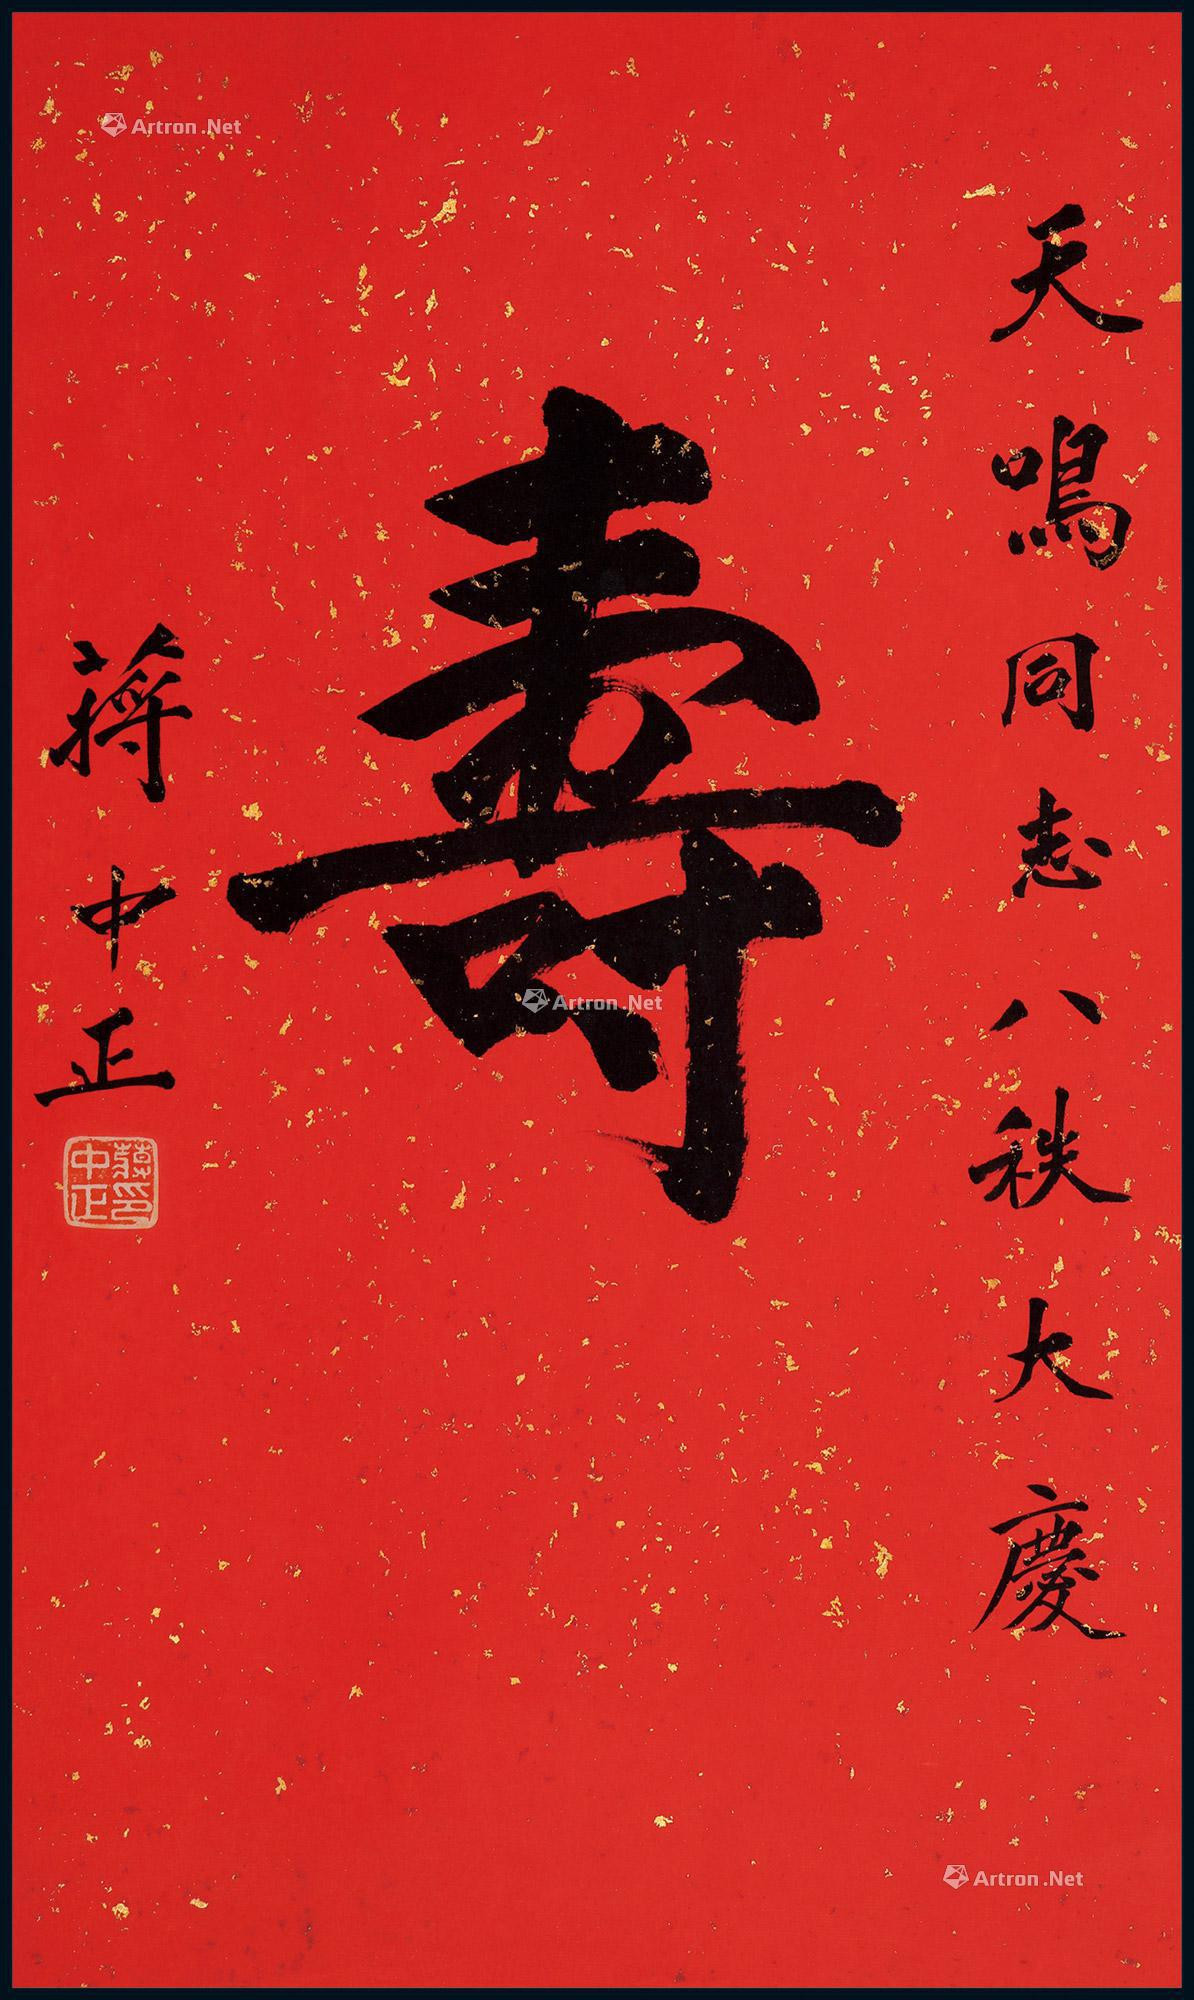 Calligraphy “Shou” by Chiang kai-shek